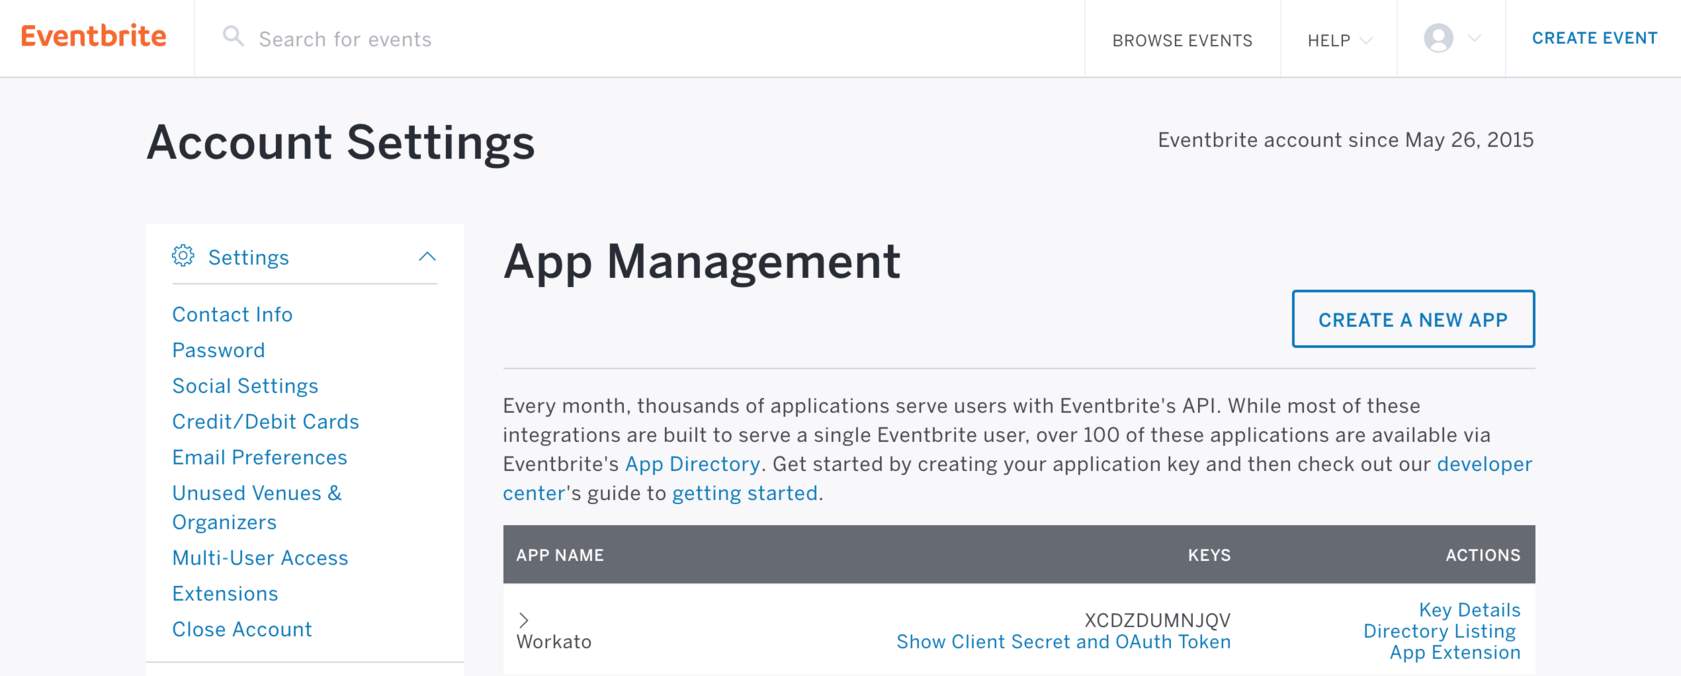 Eventbrite's App Management screen